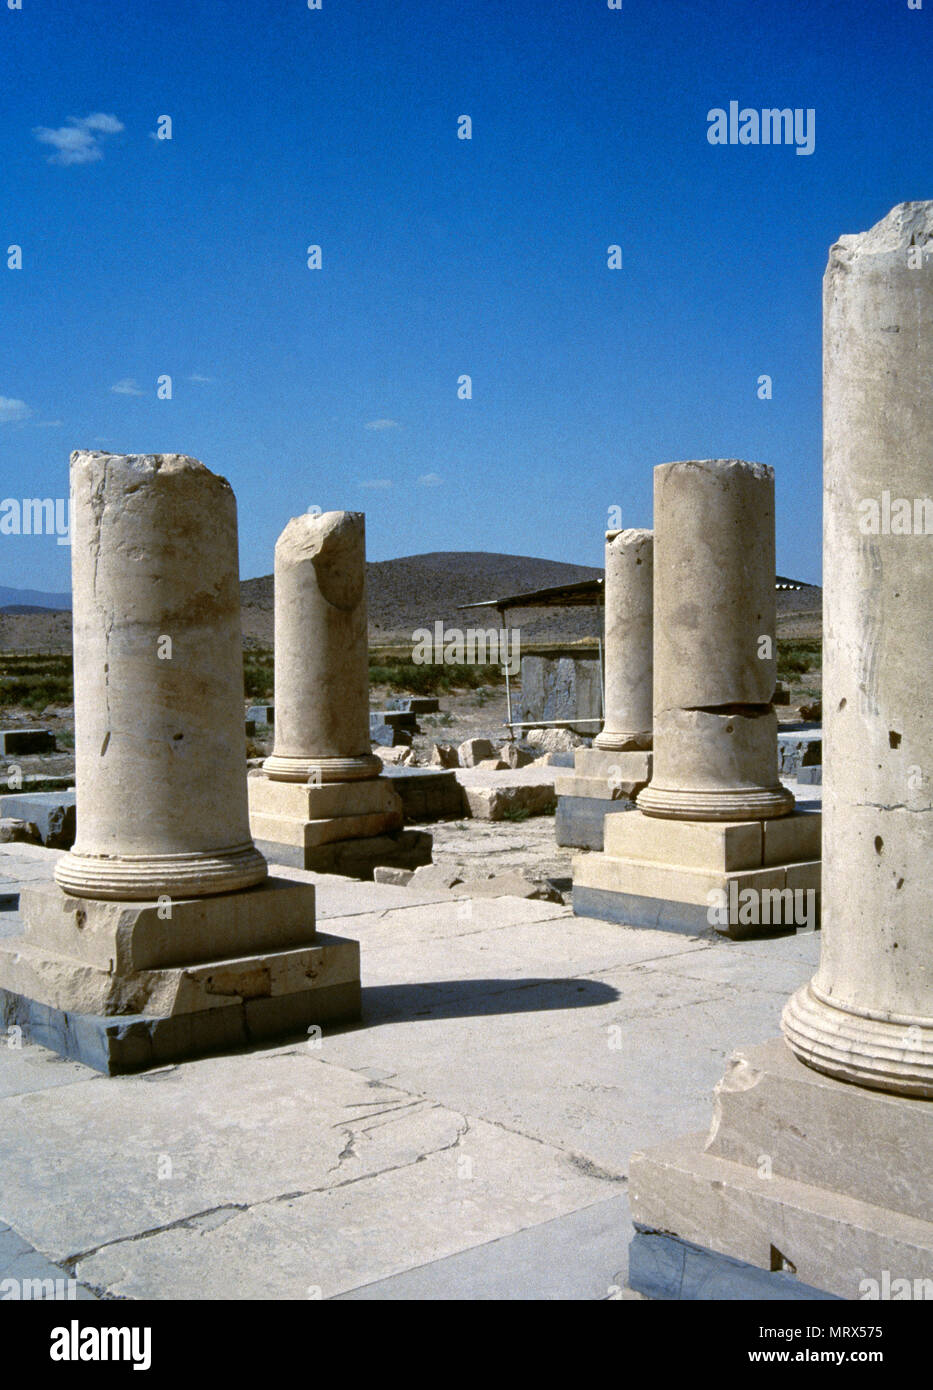 Pasargadae, der Iran. Ruinen von privaten des Großen Palastes. Es war der Palast von Kyros, Achämenidischen König von Persien (559-530 v. Chr.), der Gründer der Achämenidischen Reiches. Pasargadae war die Hauptstadt des achämenidischen Reiches unter Kyros II., der seinen Bau ausgestellt hatte. Stockfoto